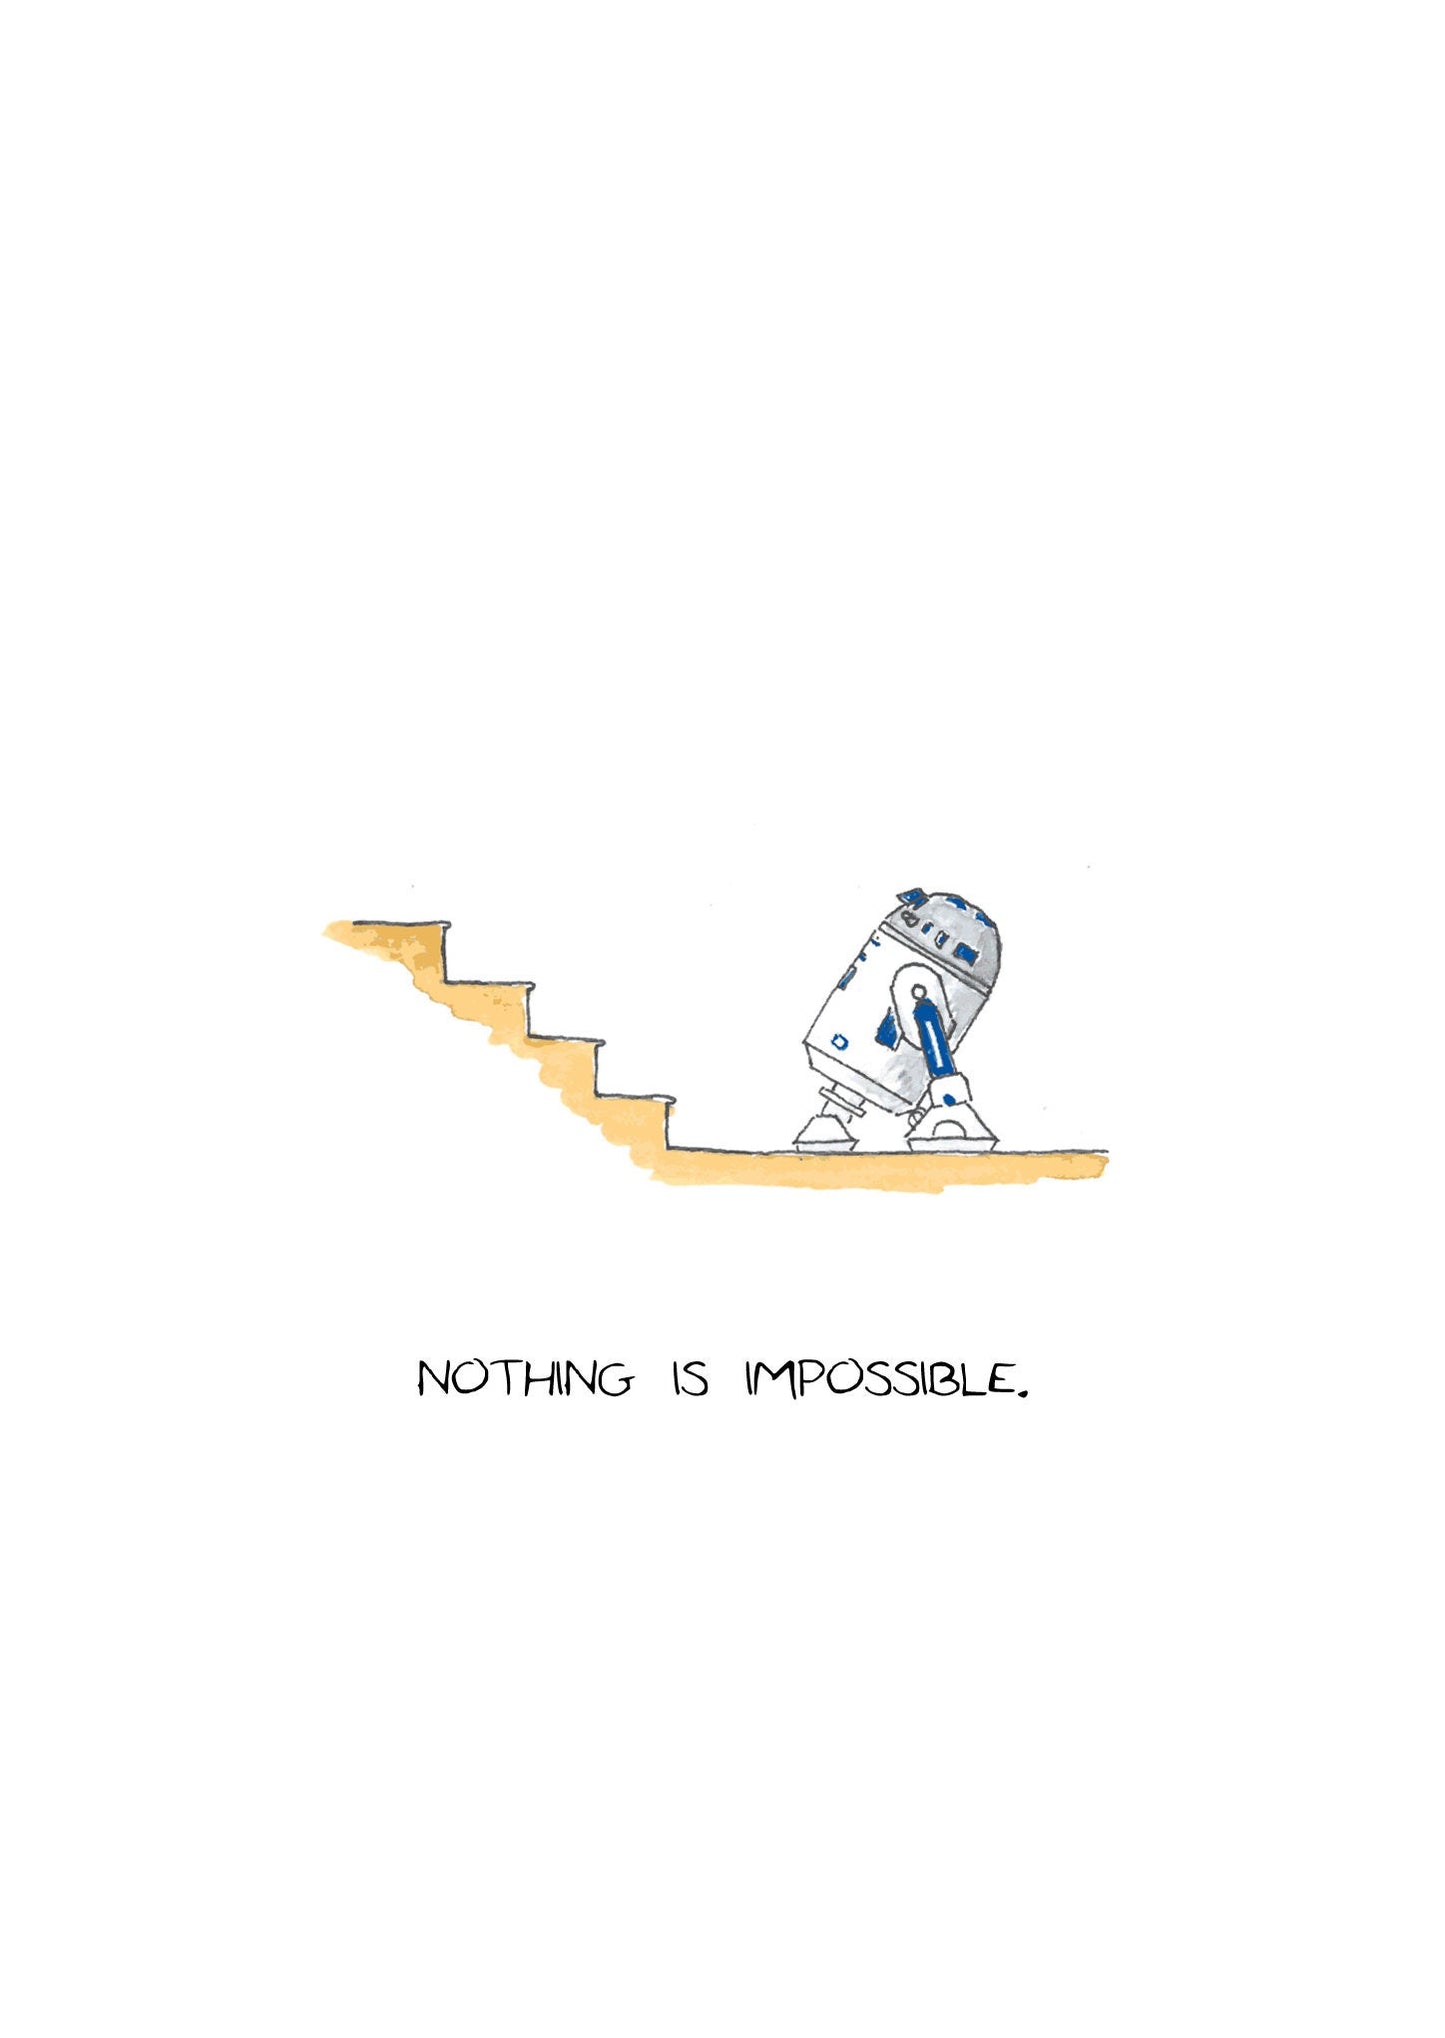 R2-D2 versus Stairs